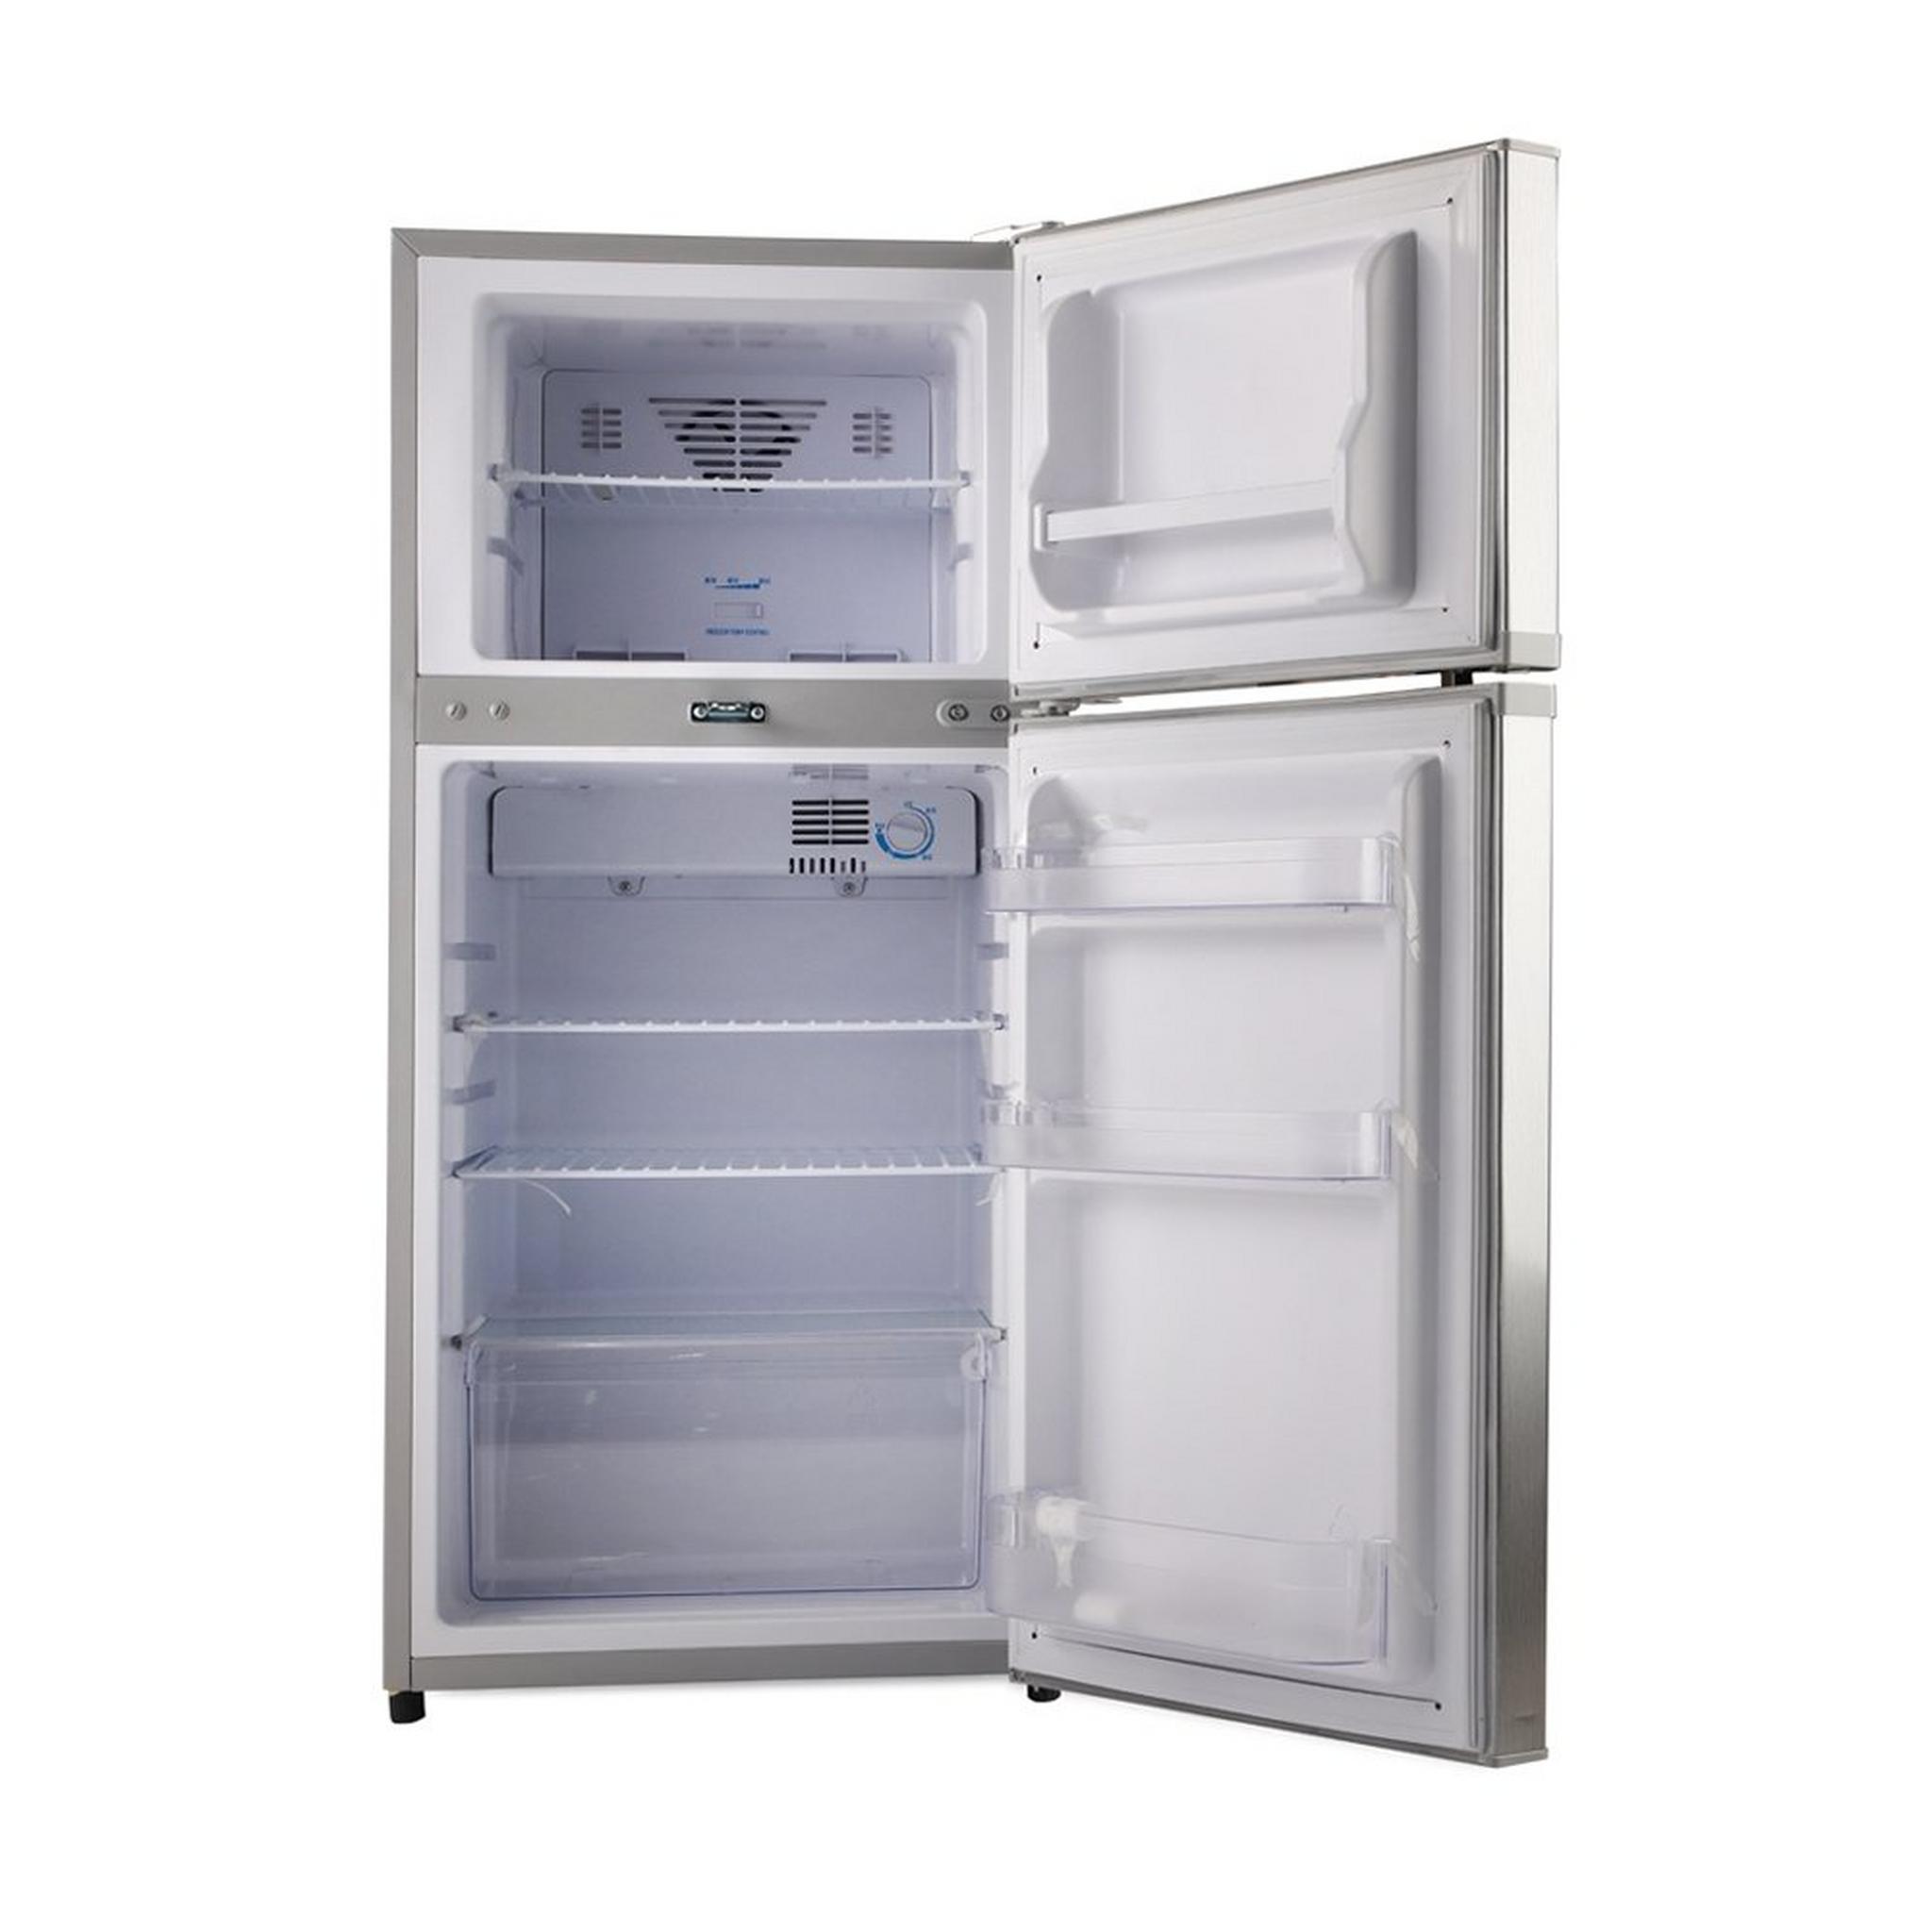 Wansa Top Mount Refrigerator, 4.4CFT, 125-Liters, WRTG125NFSC7 - Silver